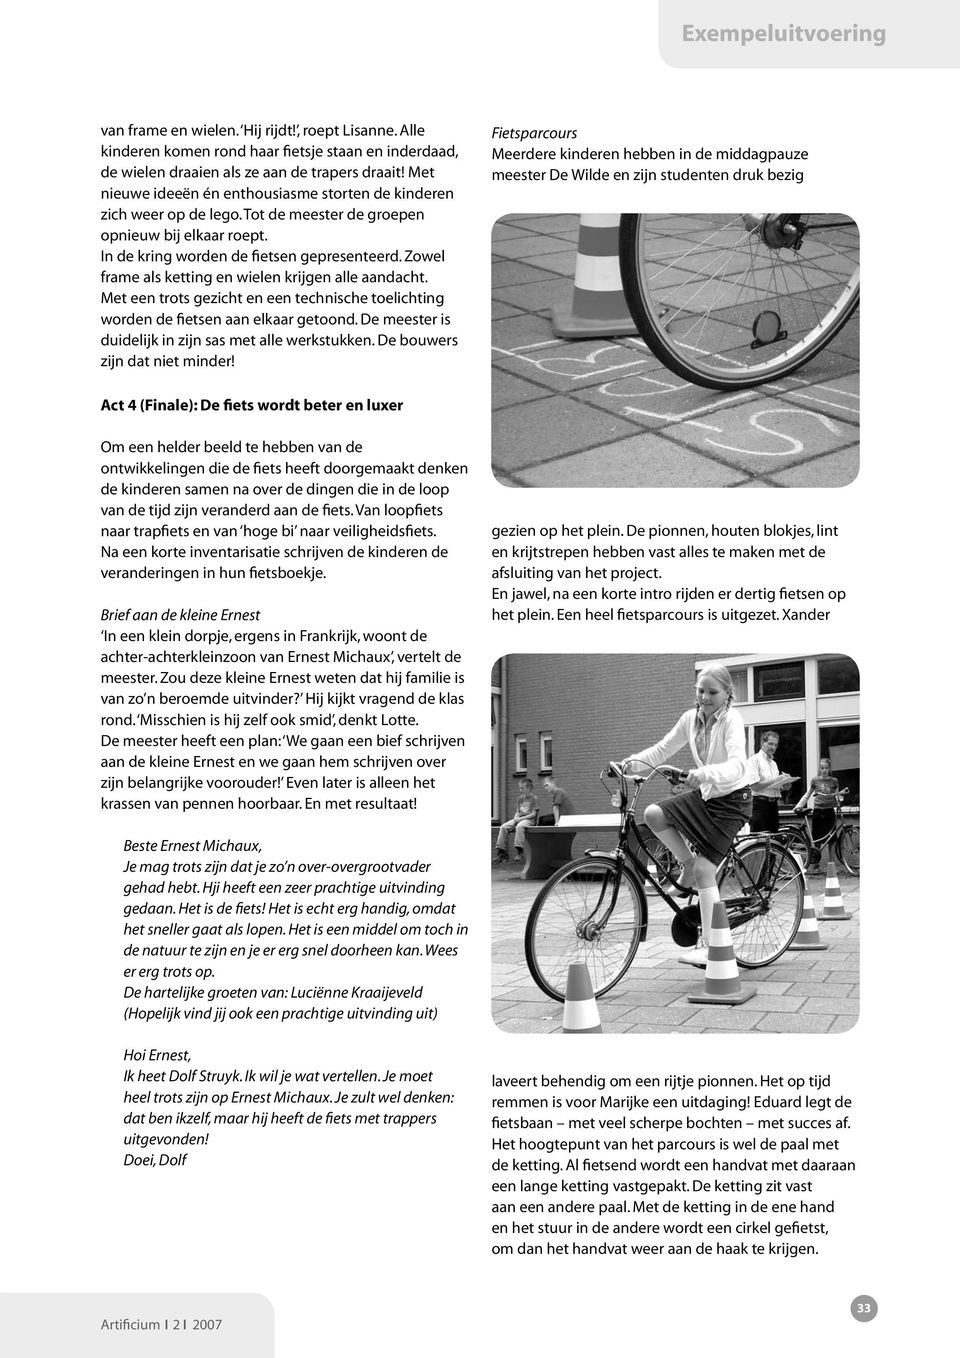 Zowel frame als ketting en wielen krijgen alle aandacht. Met een trots gezicht en een technische toelichting worden de fietsen aan elkaar getoond.